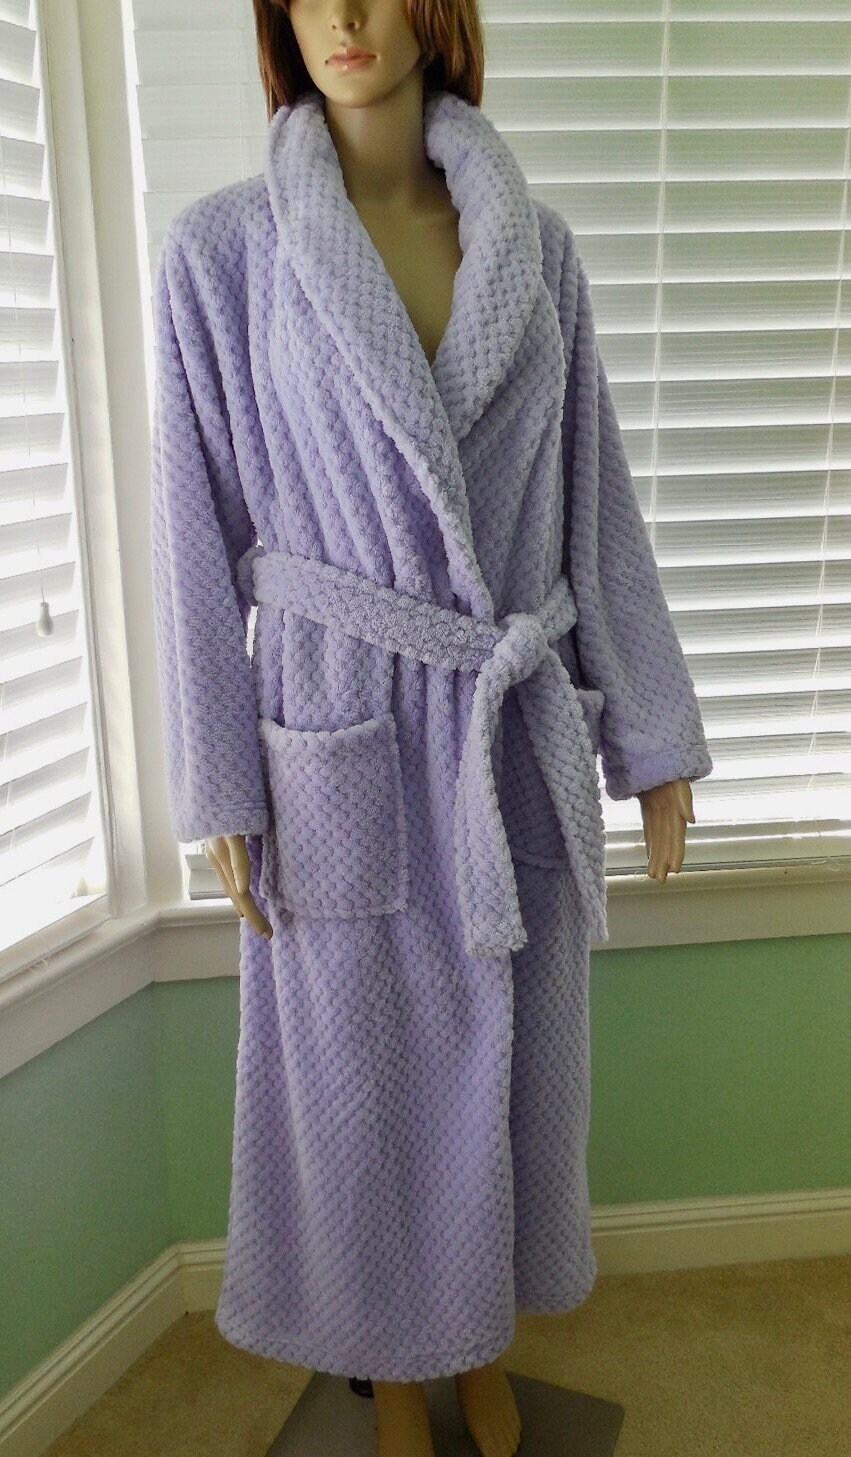 Carole Hochman Lady Plush Wrap Soft Warm Long Robe Pink Pockets Faux Fur  XXL New